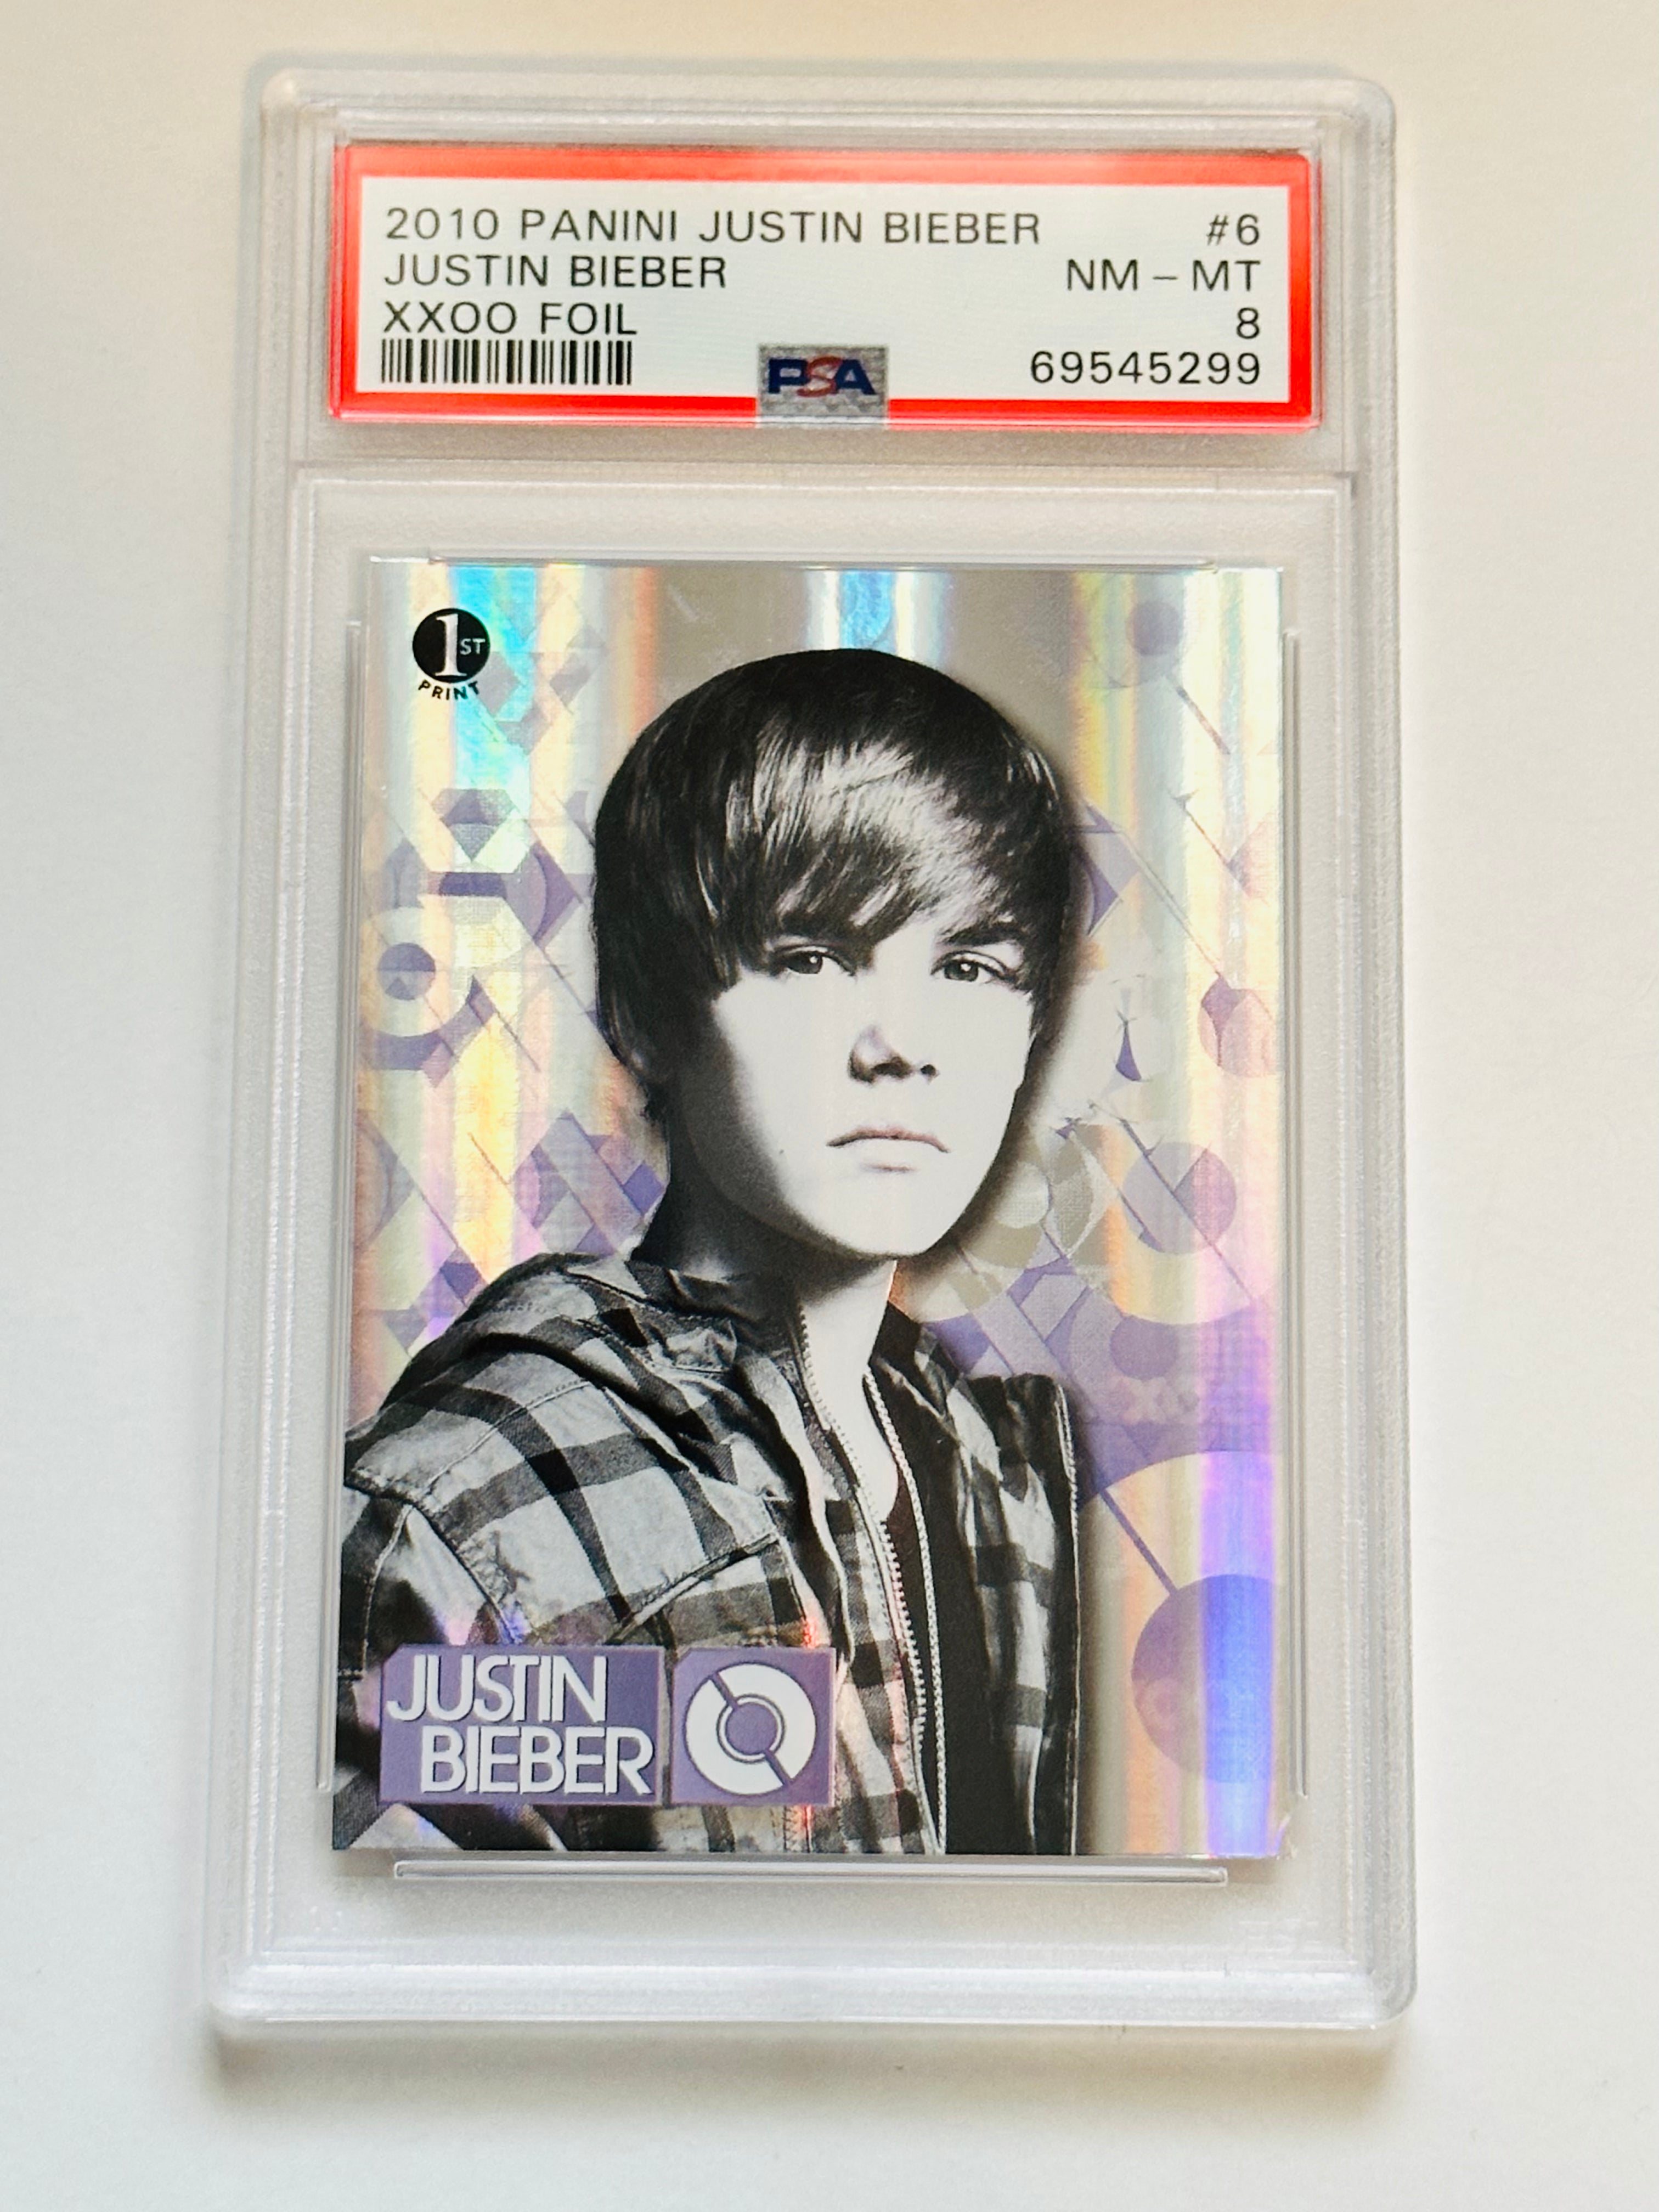 Justin Bieber Panini foil xxoo insert PSA 8 graded card 2010